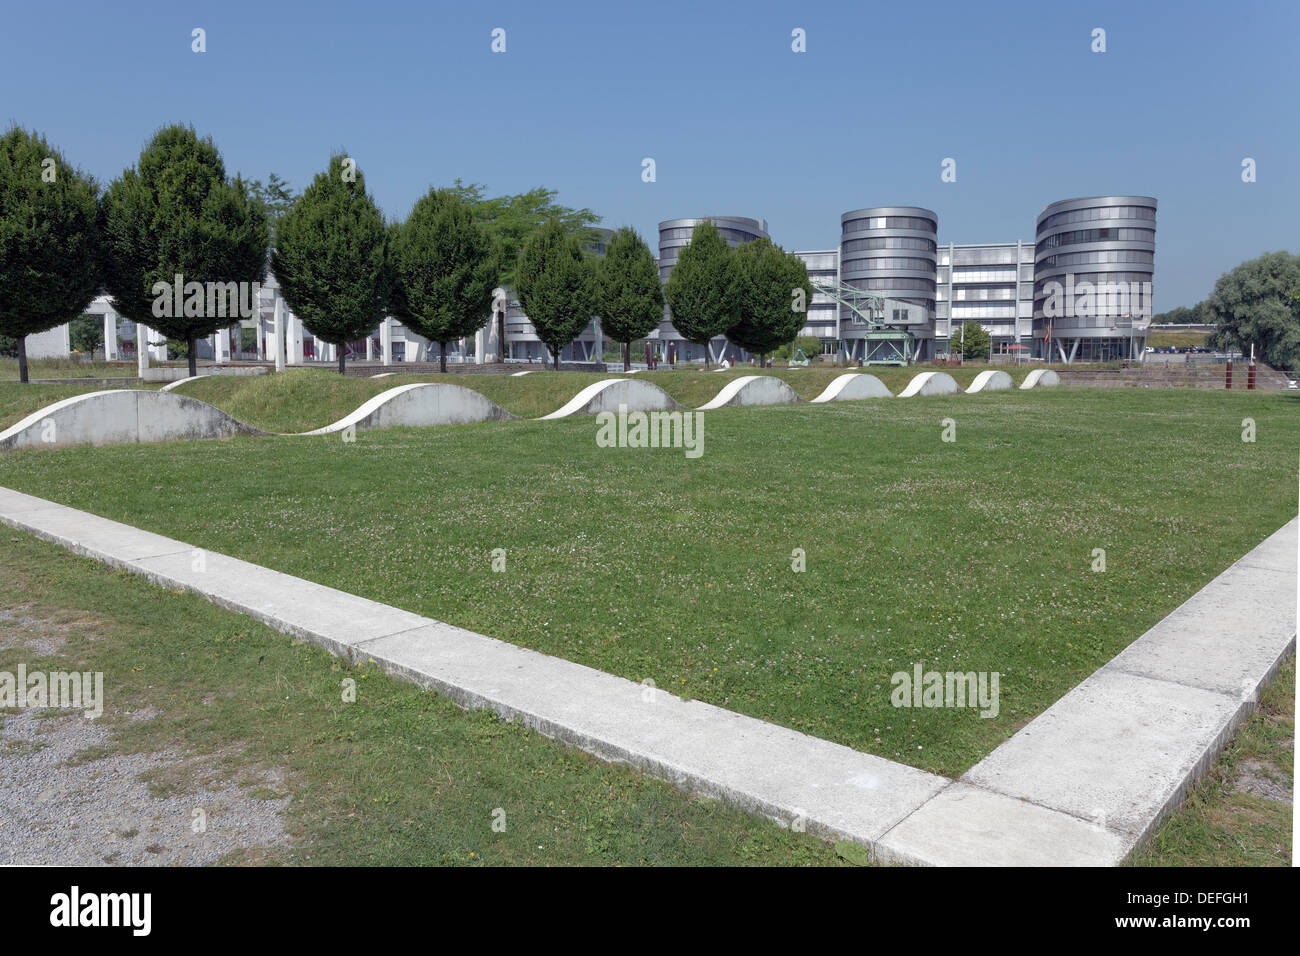 Jardín de recuerdos de Dani Karavan, Innenhafen, Duisburg, districto de Ruhr, Renania del Norte-Westfalia, Alemania Foto de stock